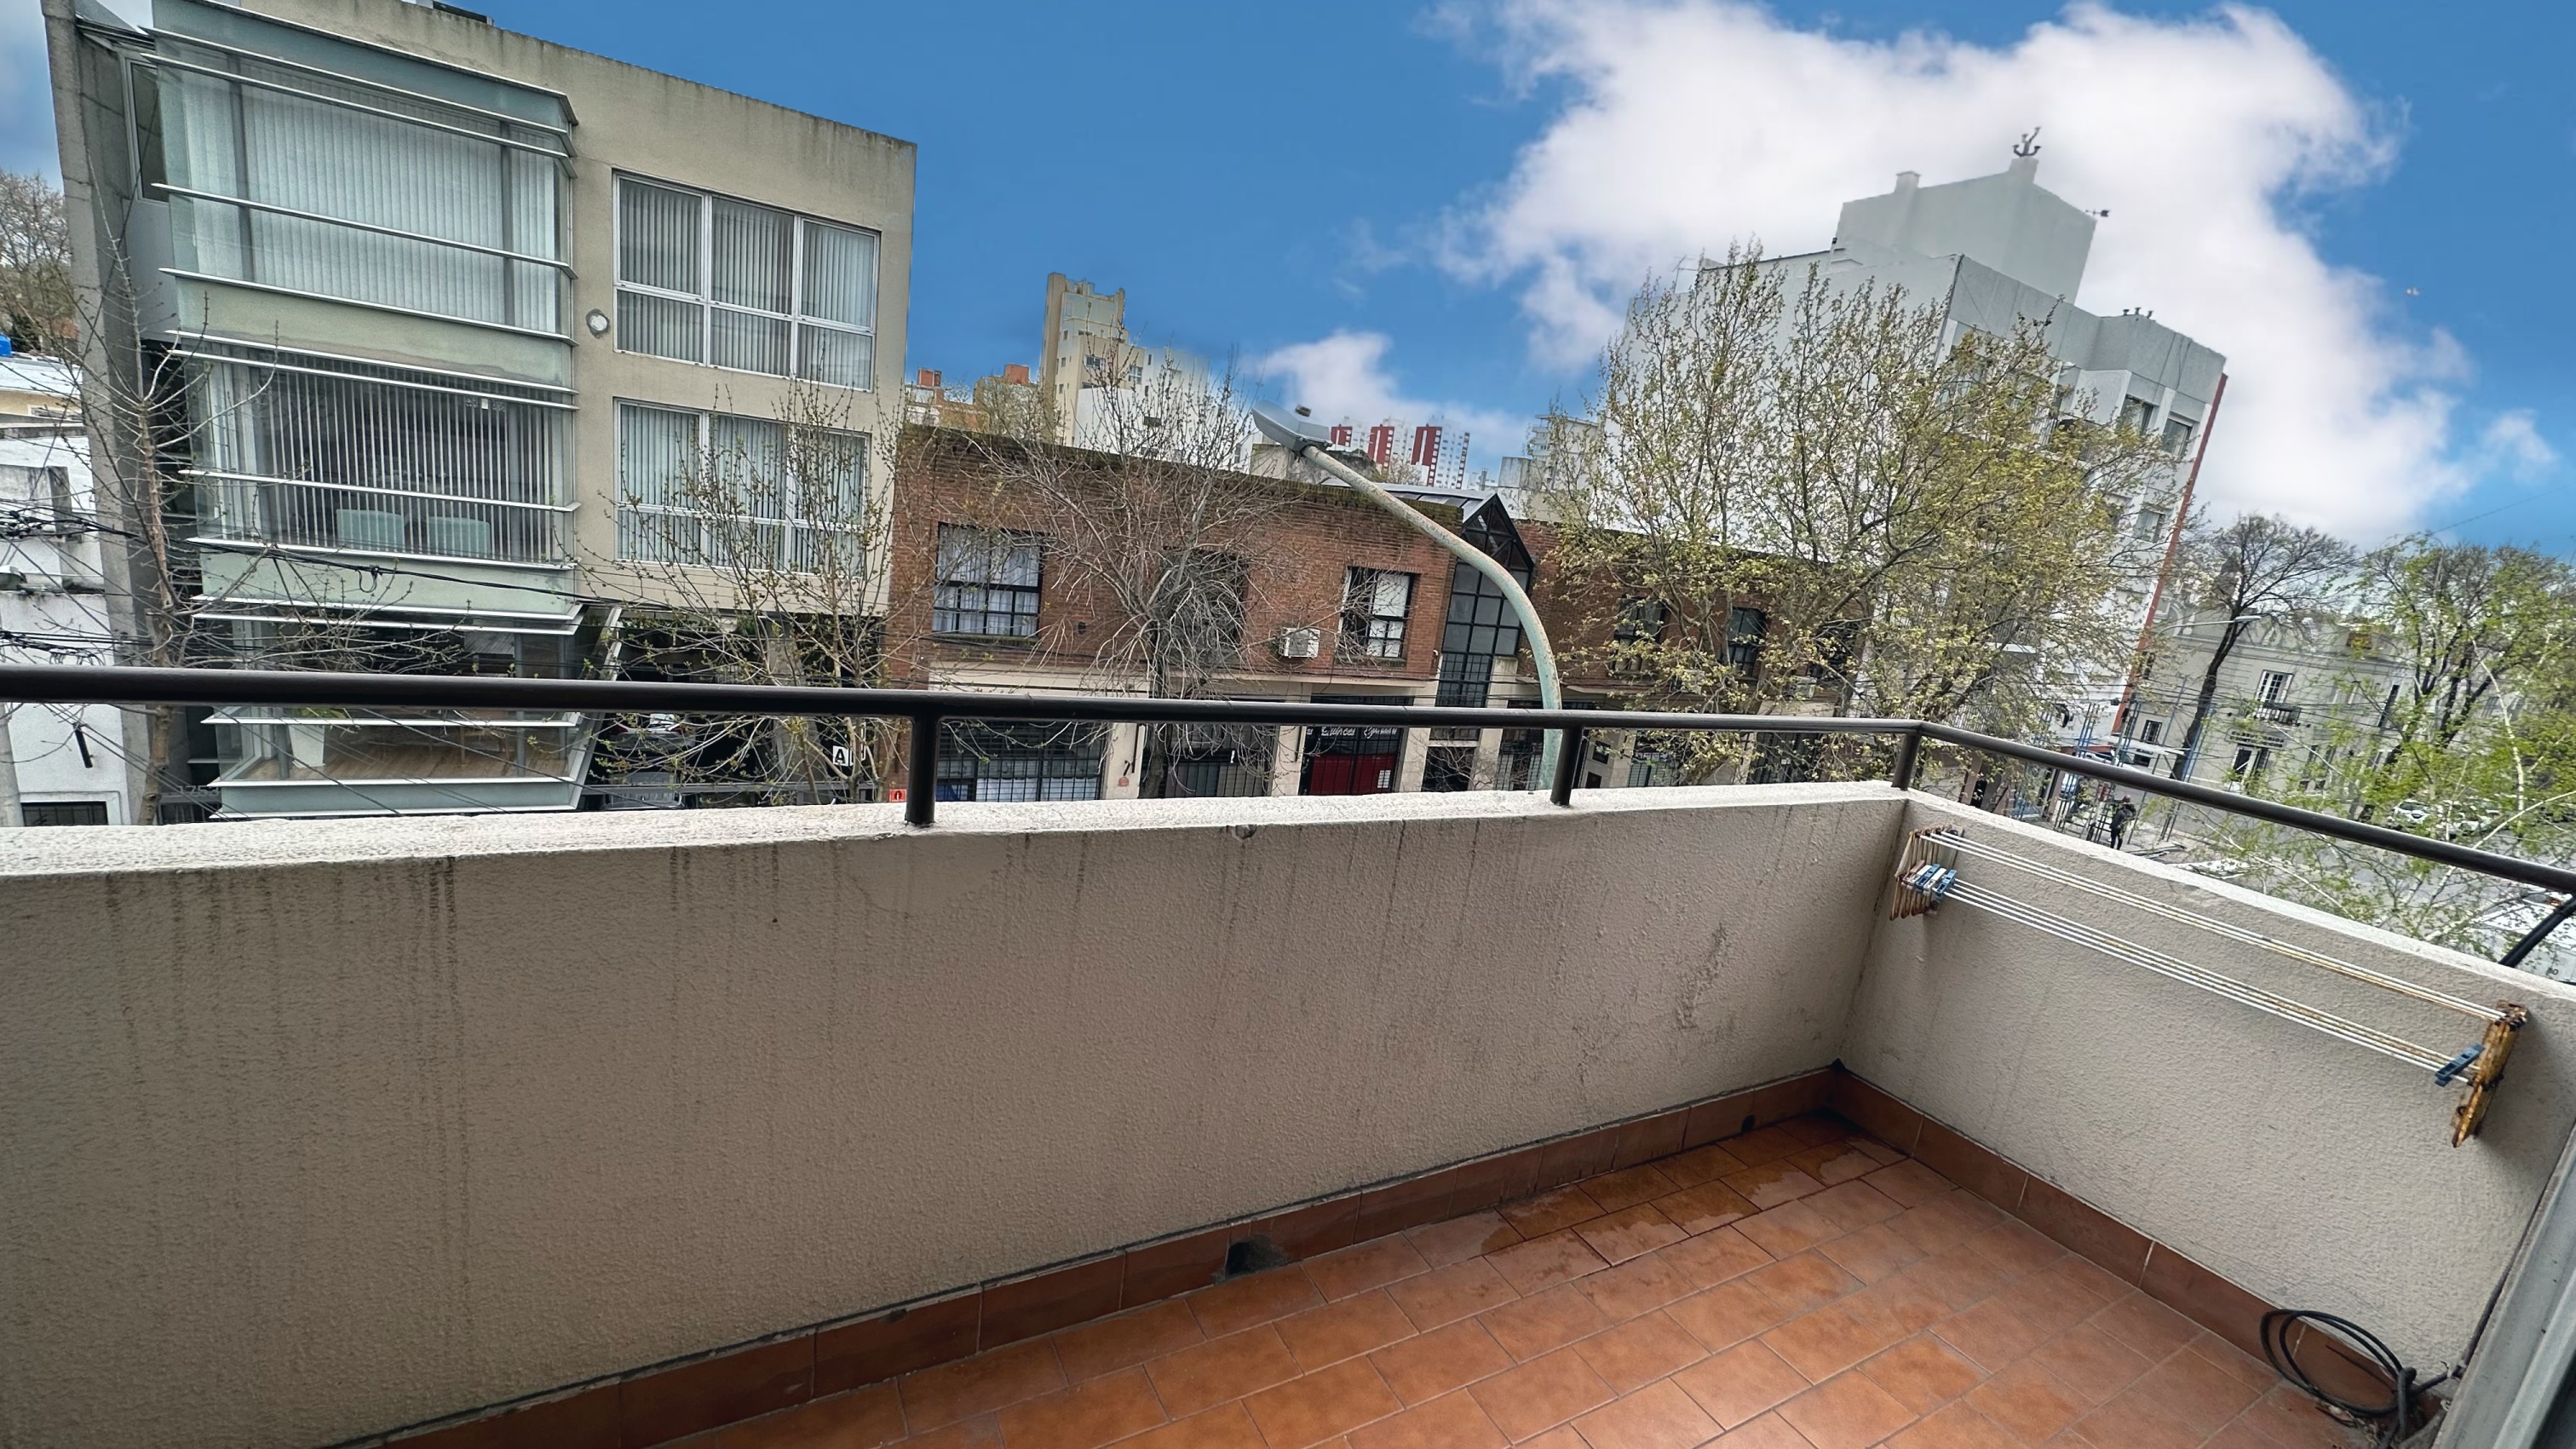 En venta departamento de 1 ambientes con balcón al frente. A metros de Plaza Rocha.